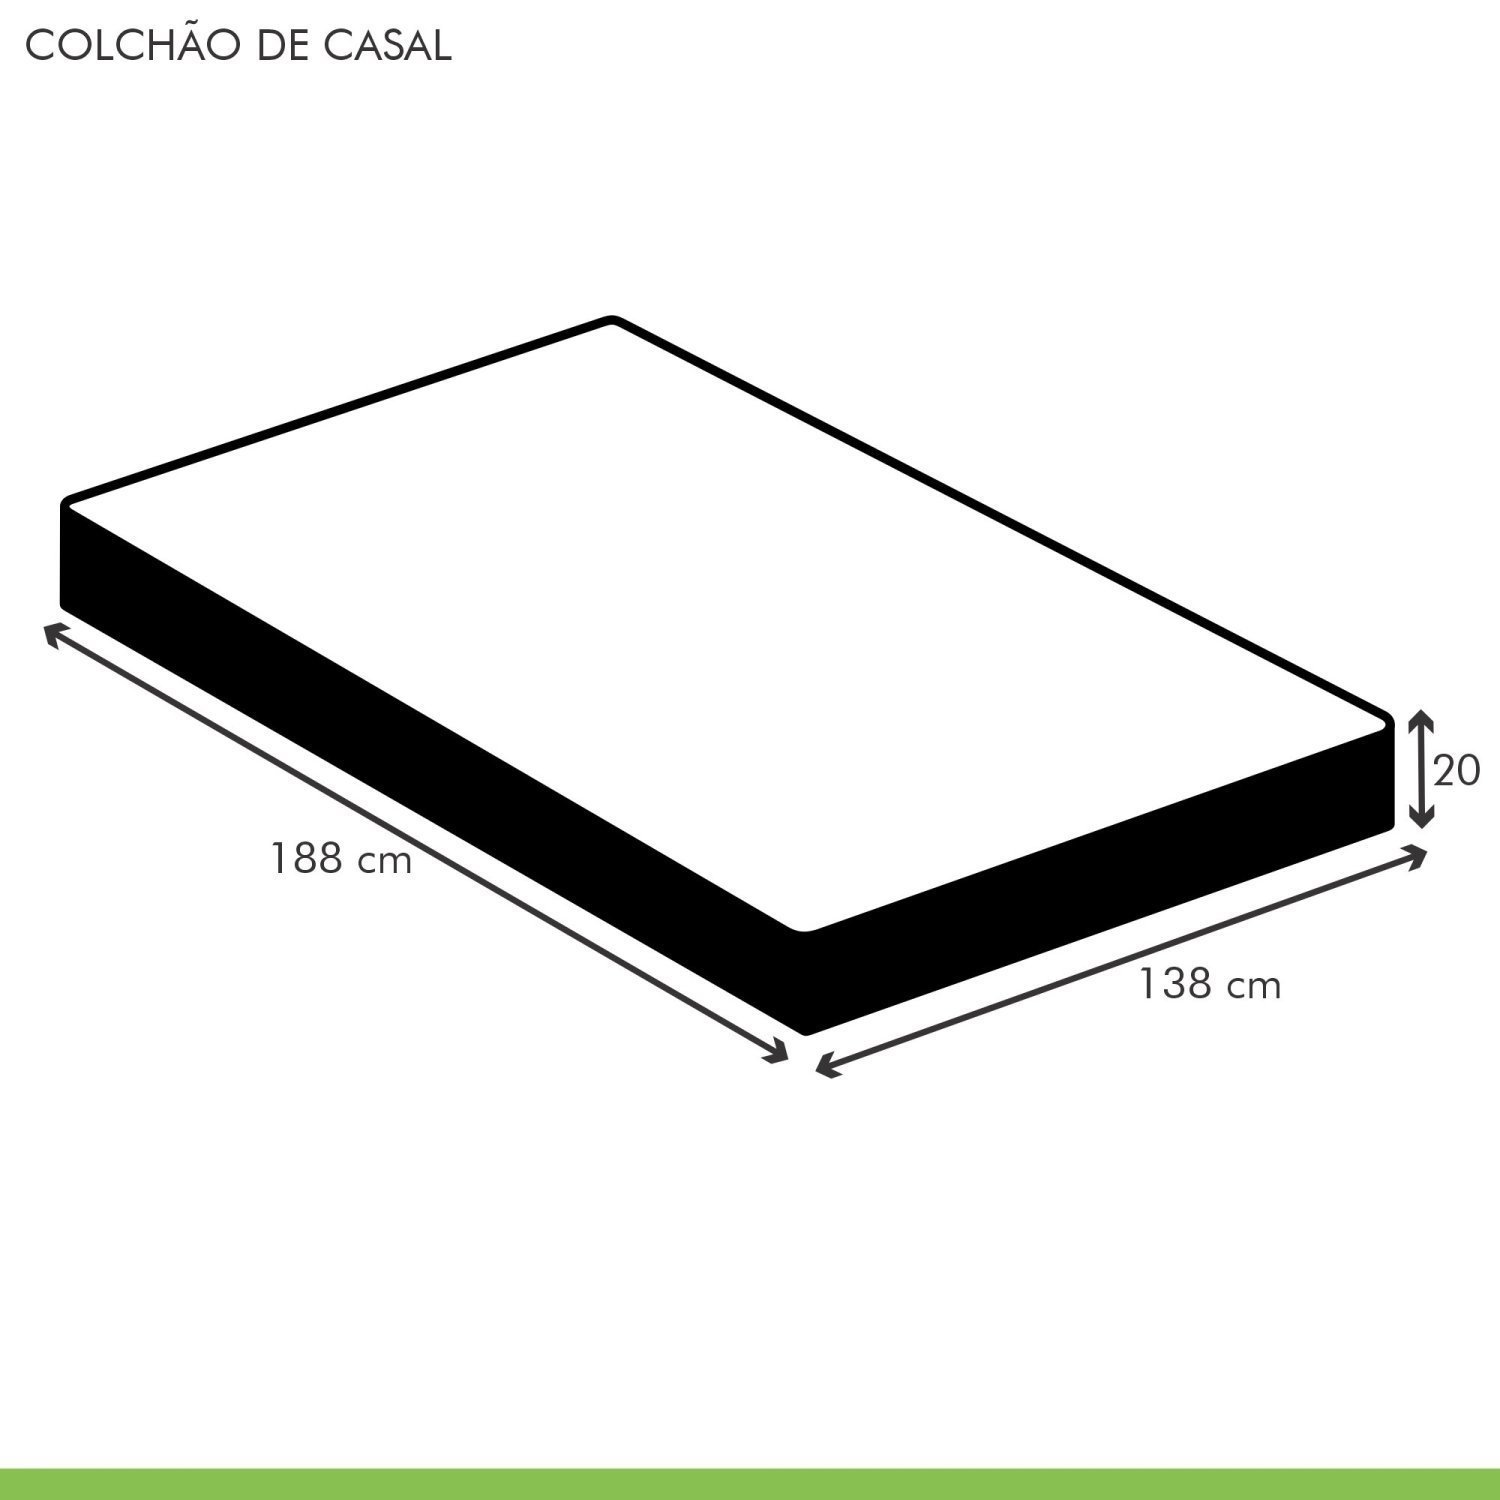 Colchão Casal  Unique D45 Plus Duoface 20x138x188cm - 6